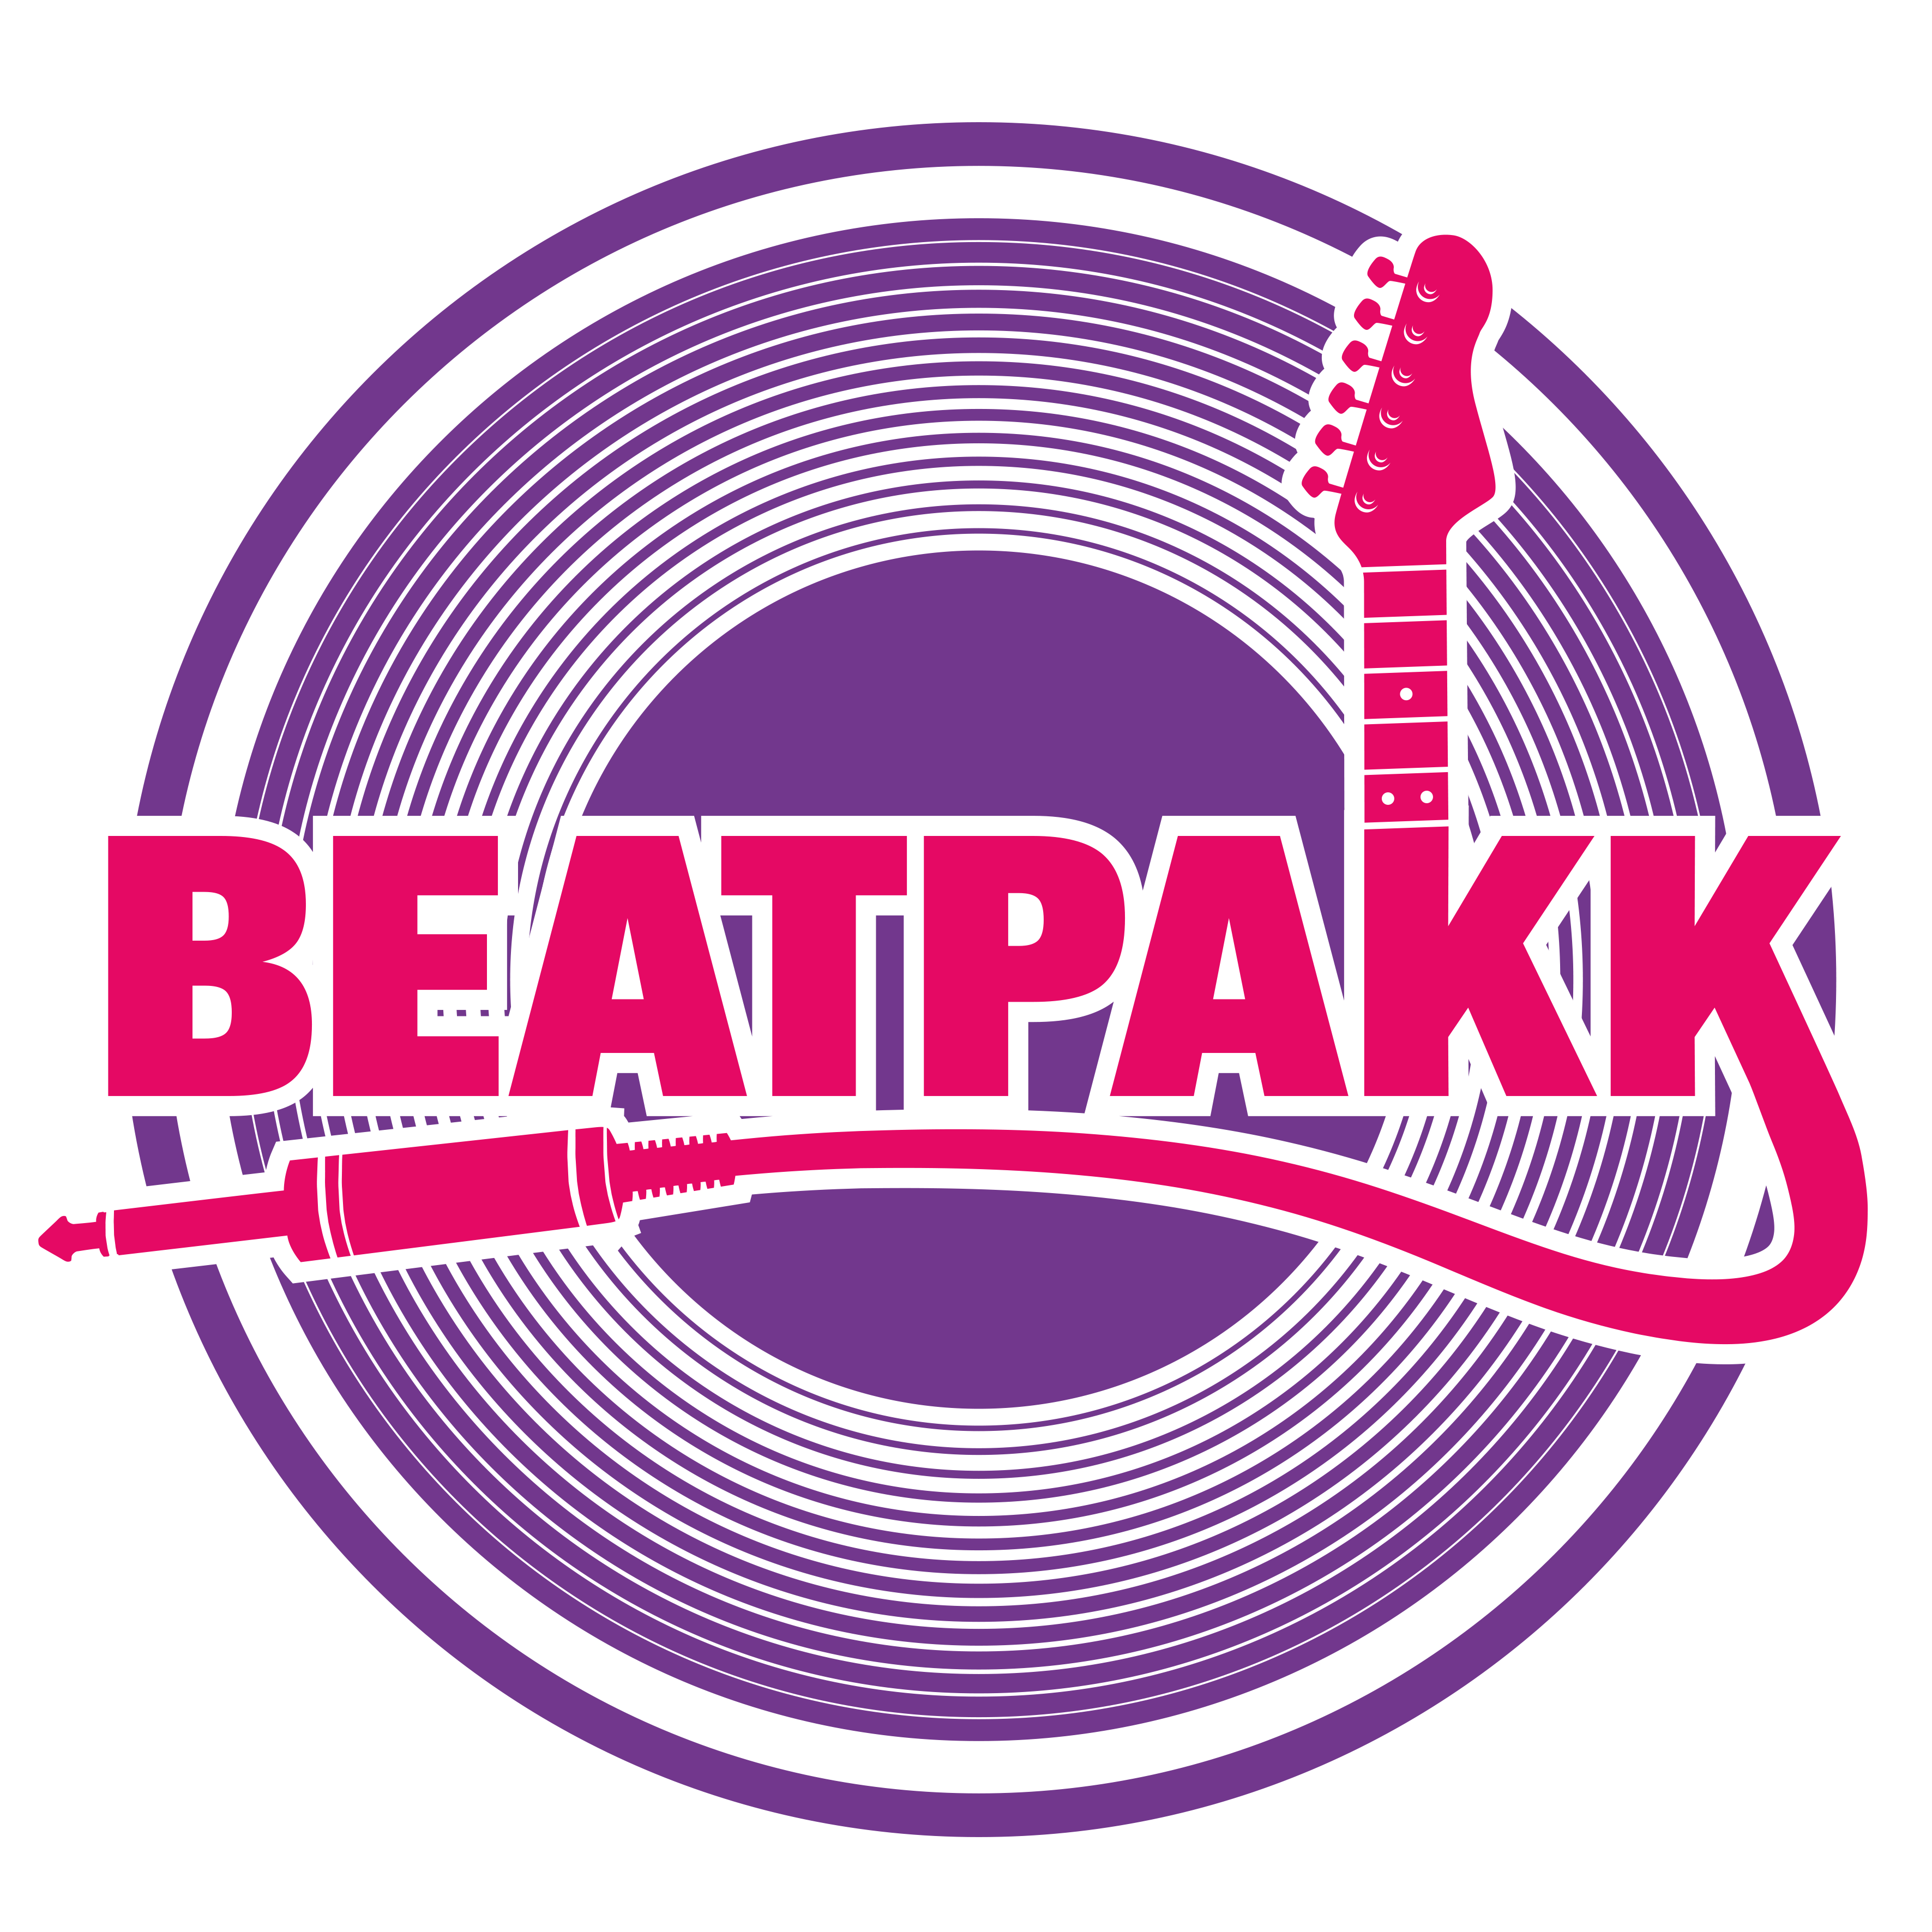 BeatPakk - Die Partyband